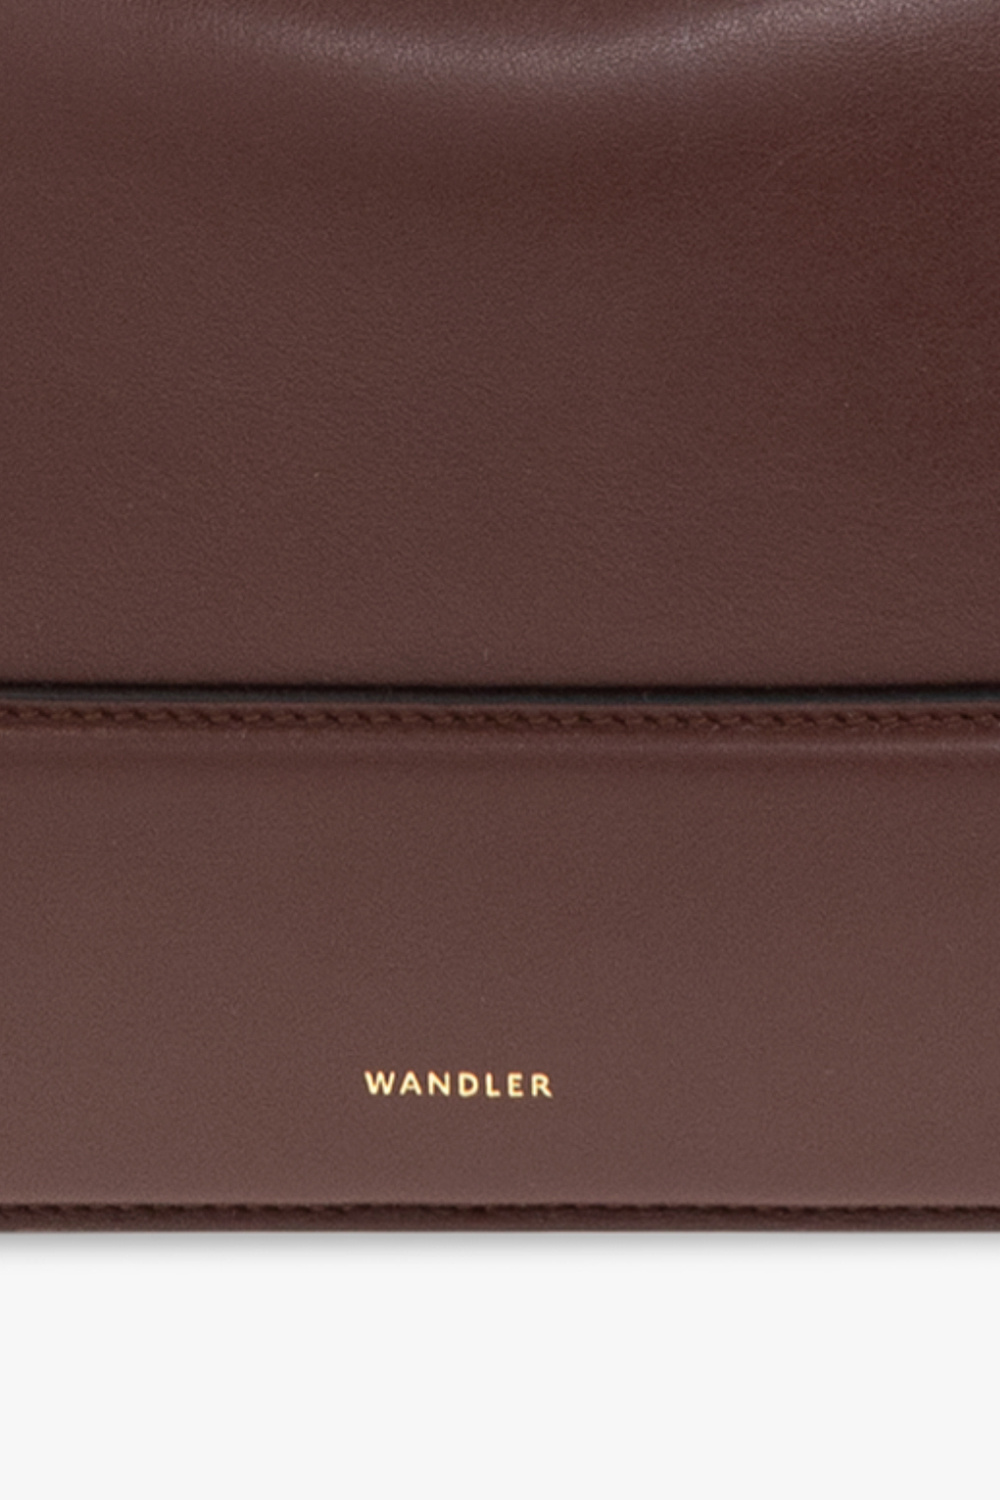 Wandler ‘Penelope’ shoulder bag